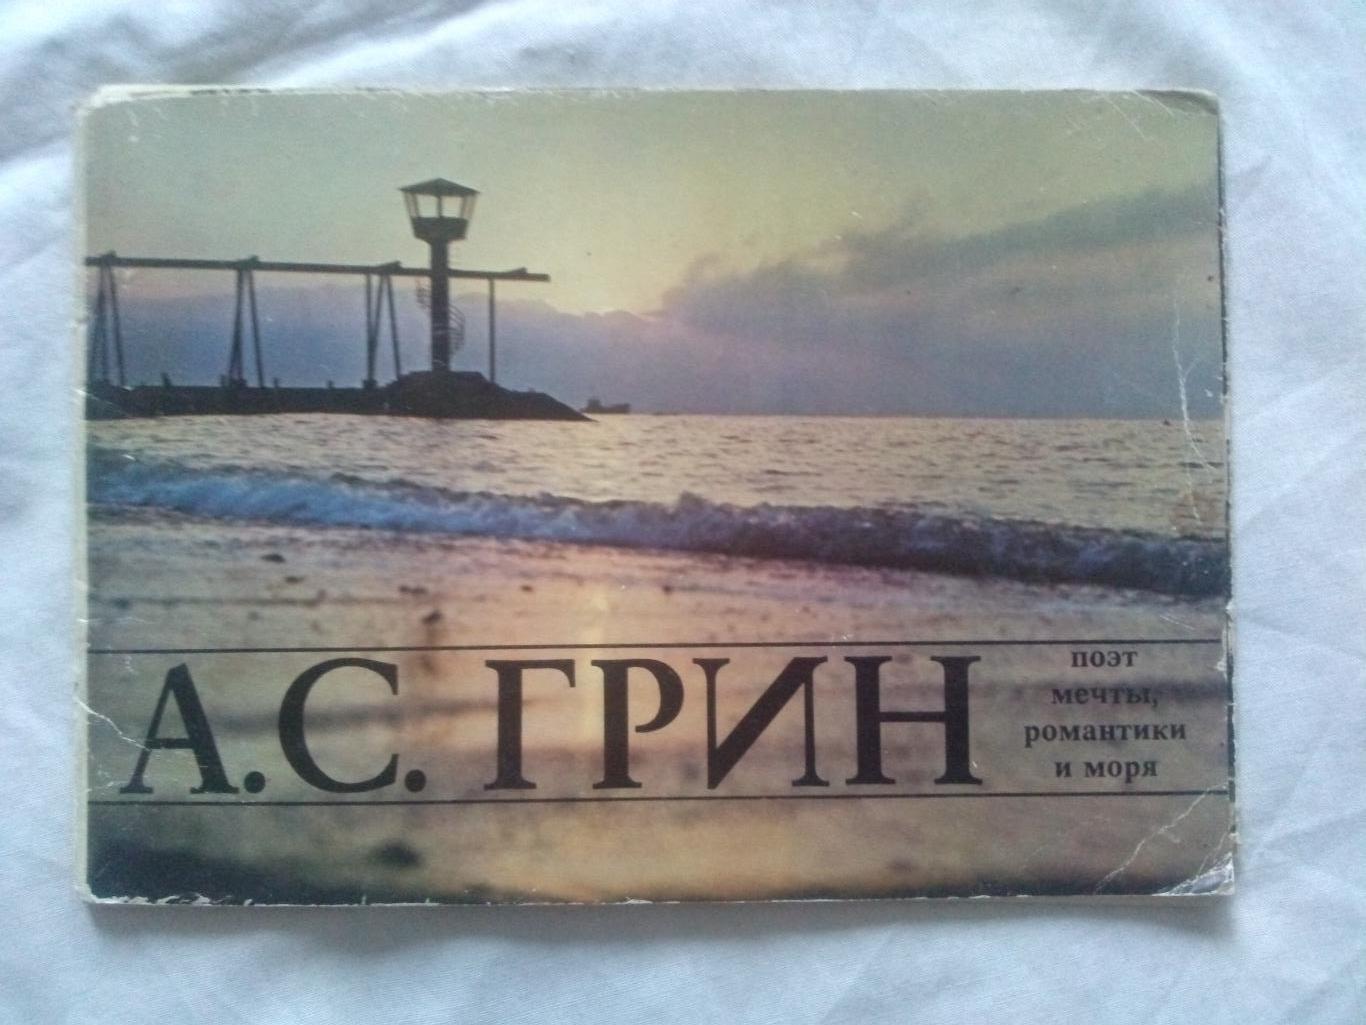 А.С. Грин - поэт мечты , романтики и моря 1981 г. полный набор - 8 открыток